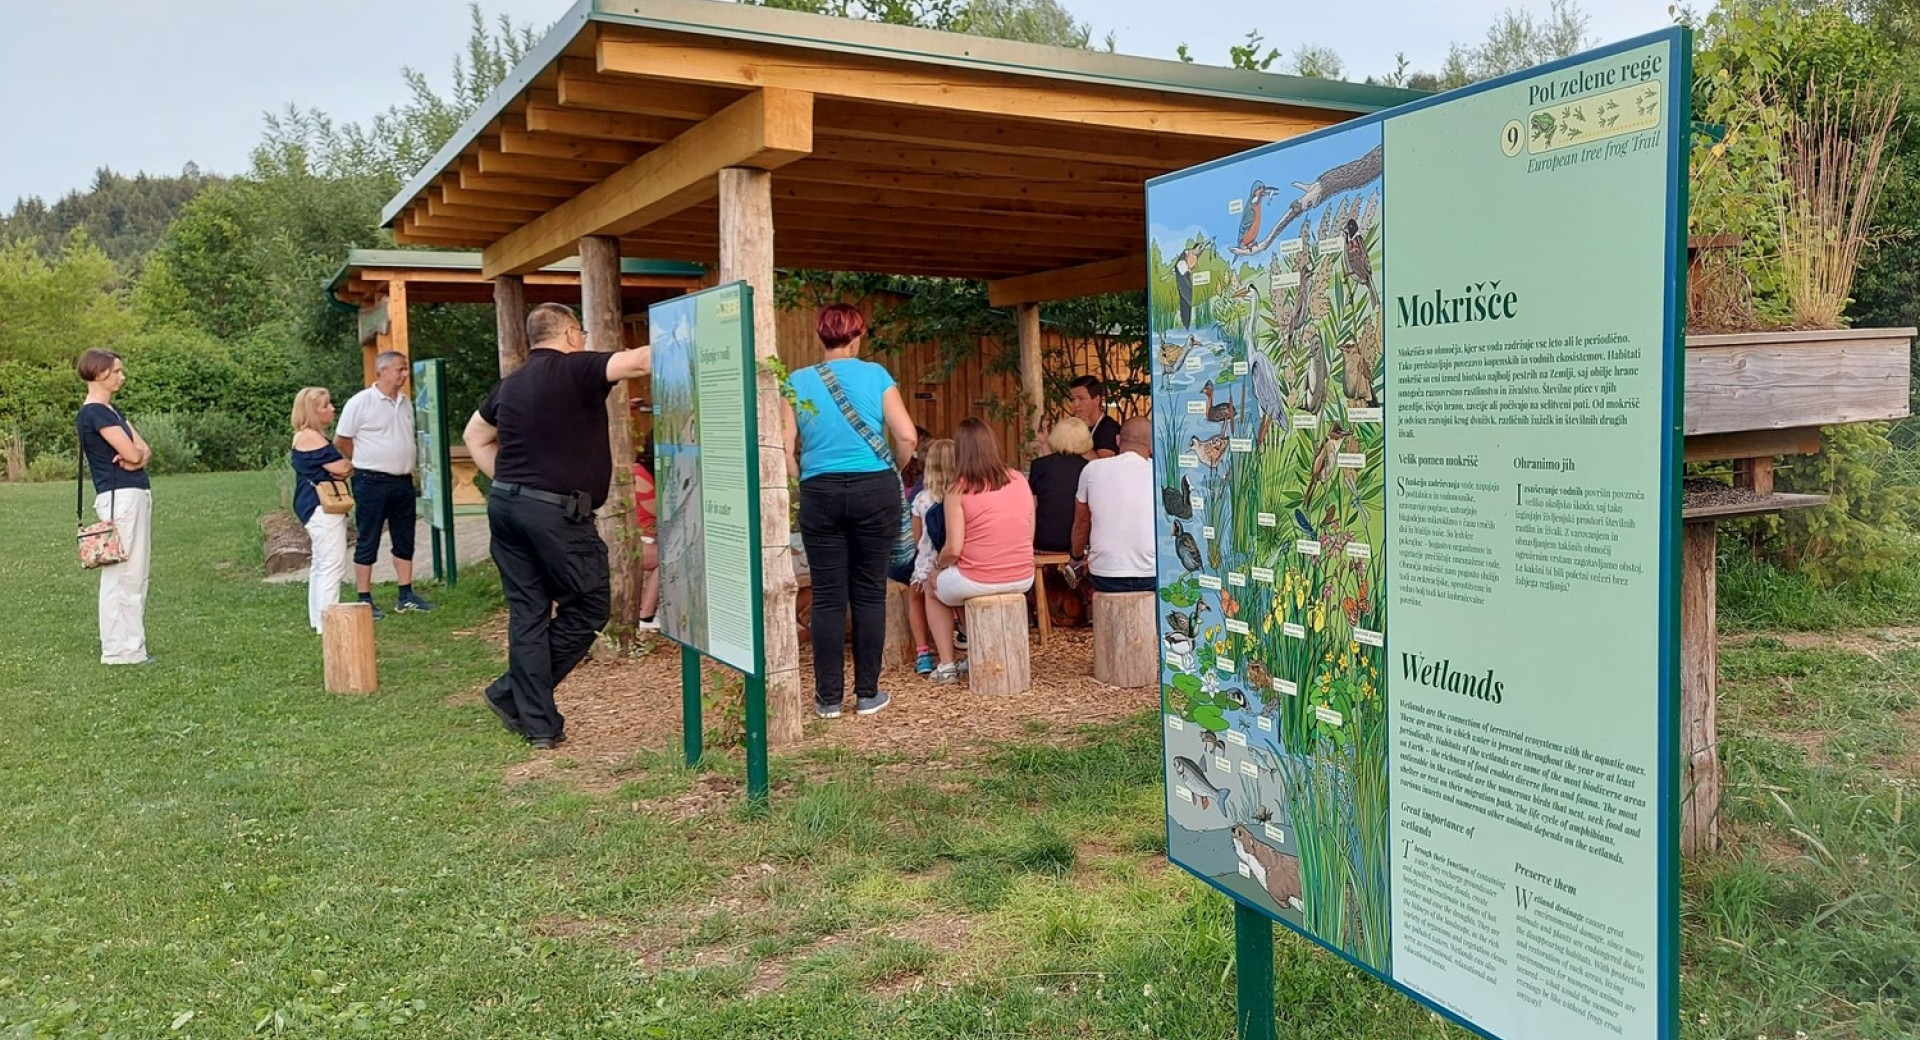 Tematska Pot zelene rege v Vodomčevem gaju v bližini Grosupljega; v ospredju informativna tabla o mokriščih, v ozadju obiskovalci